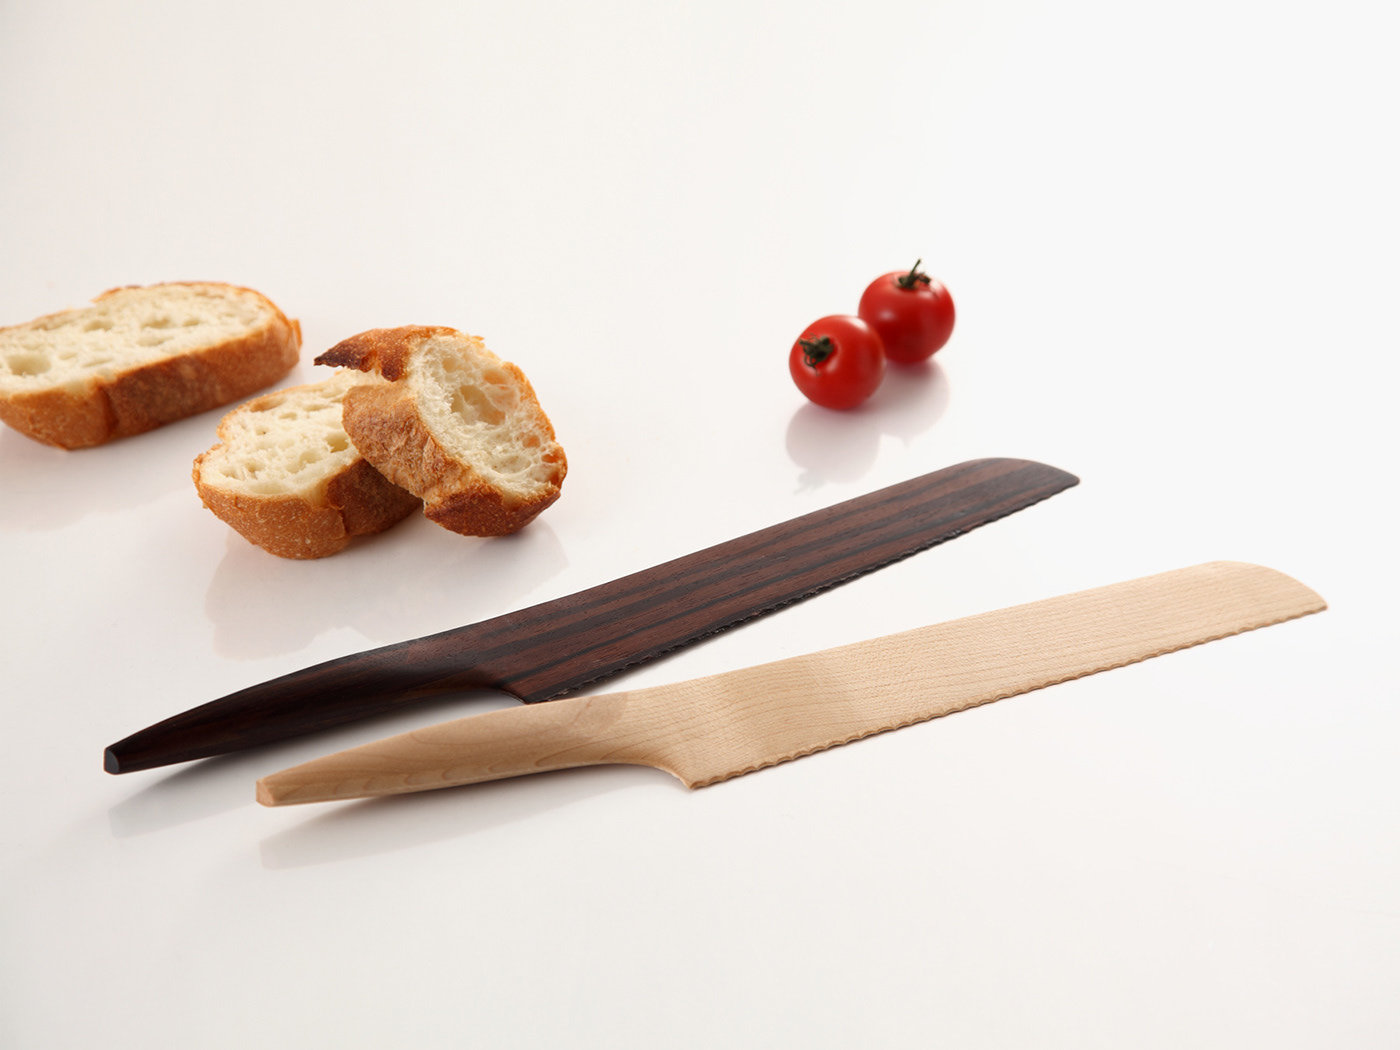 wood wooden knife japan kyoto andrea ponti product design Hong Kong fusion minimal